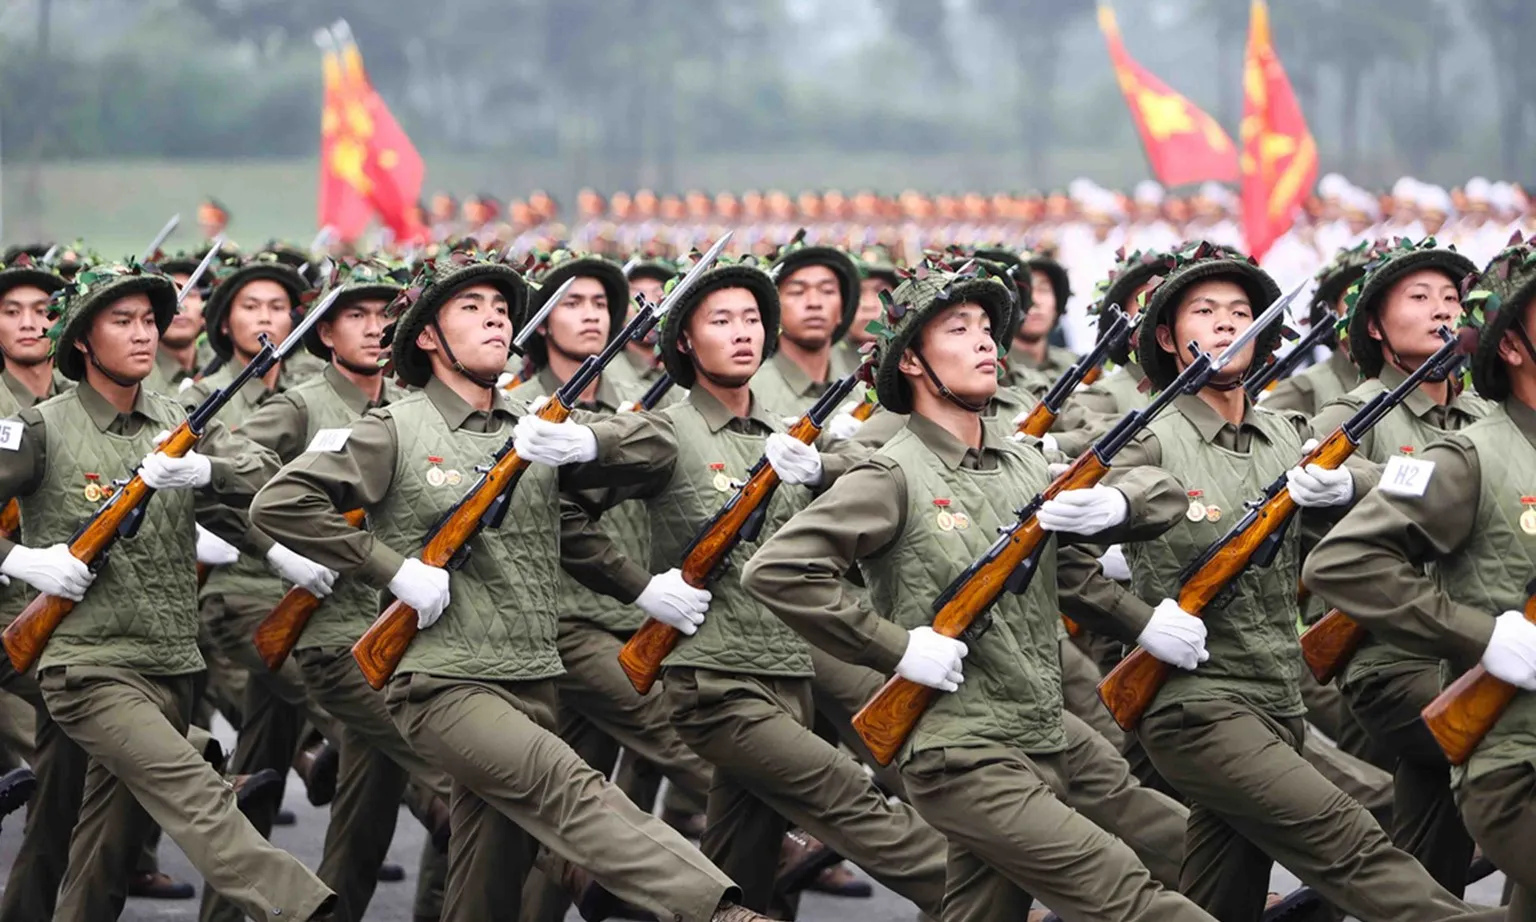 Quân đội tổng duyệt diễu binh, diễu hành Lễ kỷ niệm 70 năm Chiến thắng Điện Biên Phủ